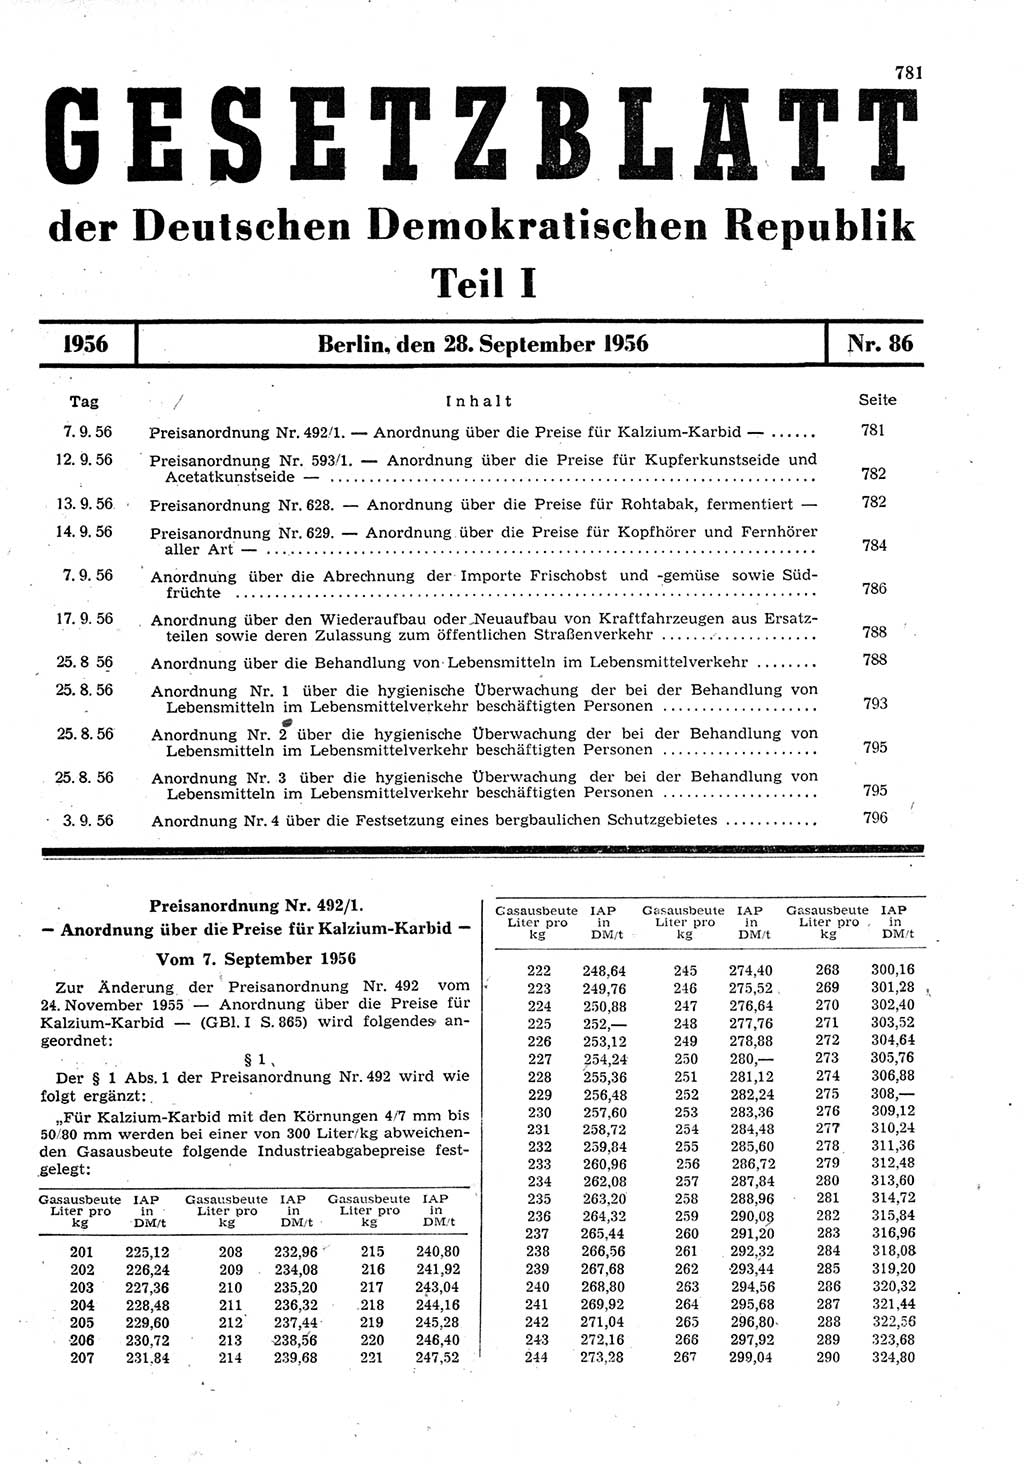 Gesetzblatt (GBl.) der Deutschen Demokratischen Republik (DDR) Teil Ⅰ 1956, Seite 781 (GBl. DDR Ⅰ 1956, S. 781)